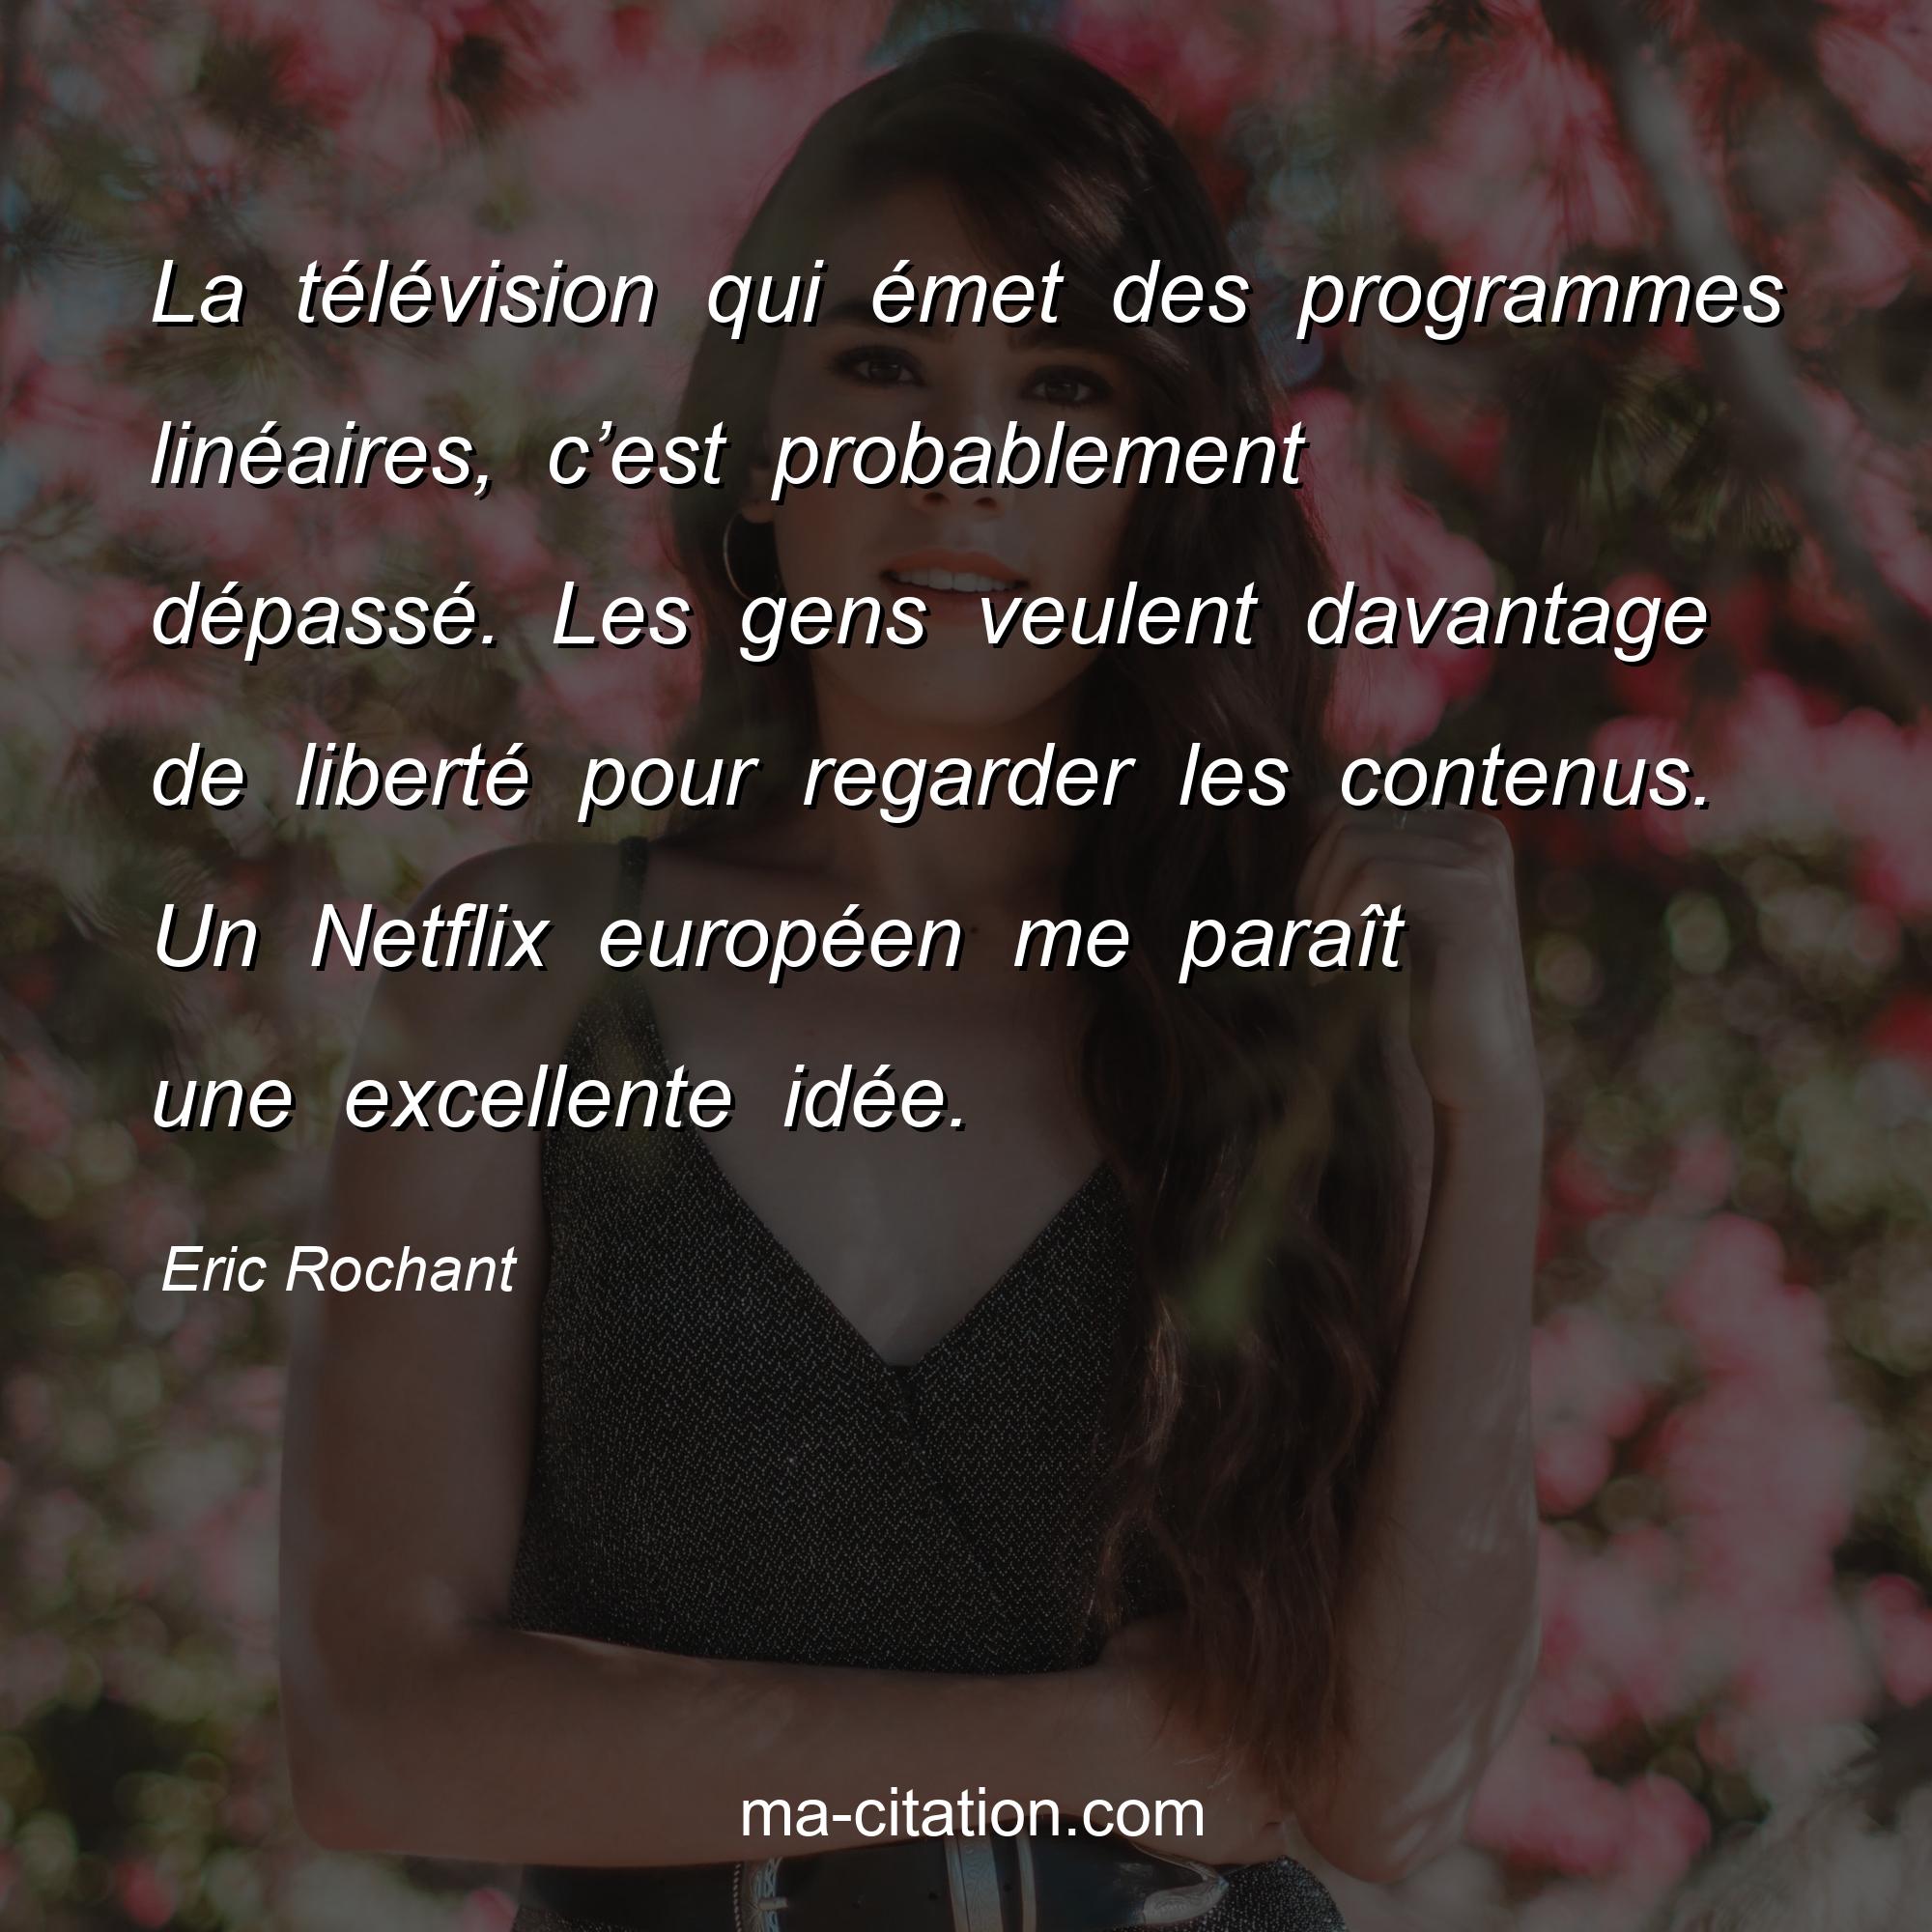 Eric Rochant : La télévision qui émet des programmes linéaires, c’est probablement dépassé. Les gens veulent davantage de liberté pour regarder les contenus. Un Netflix européen me paraît une excellente idée.